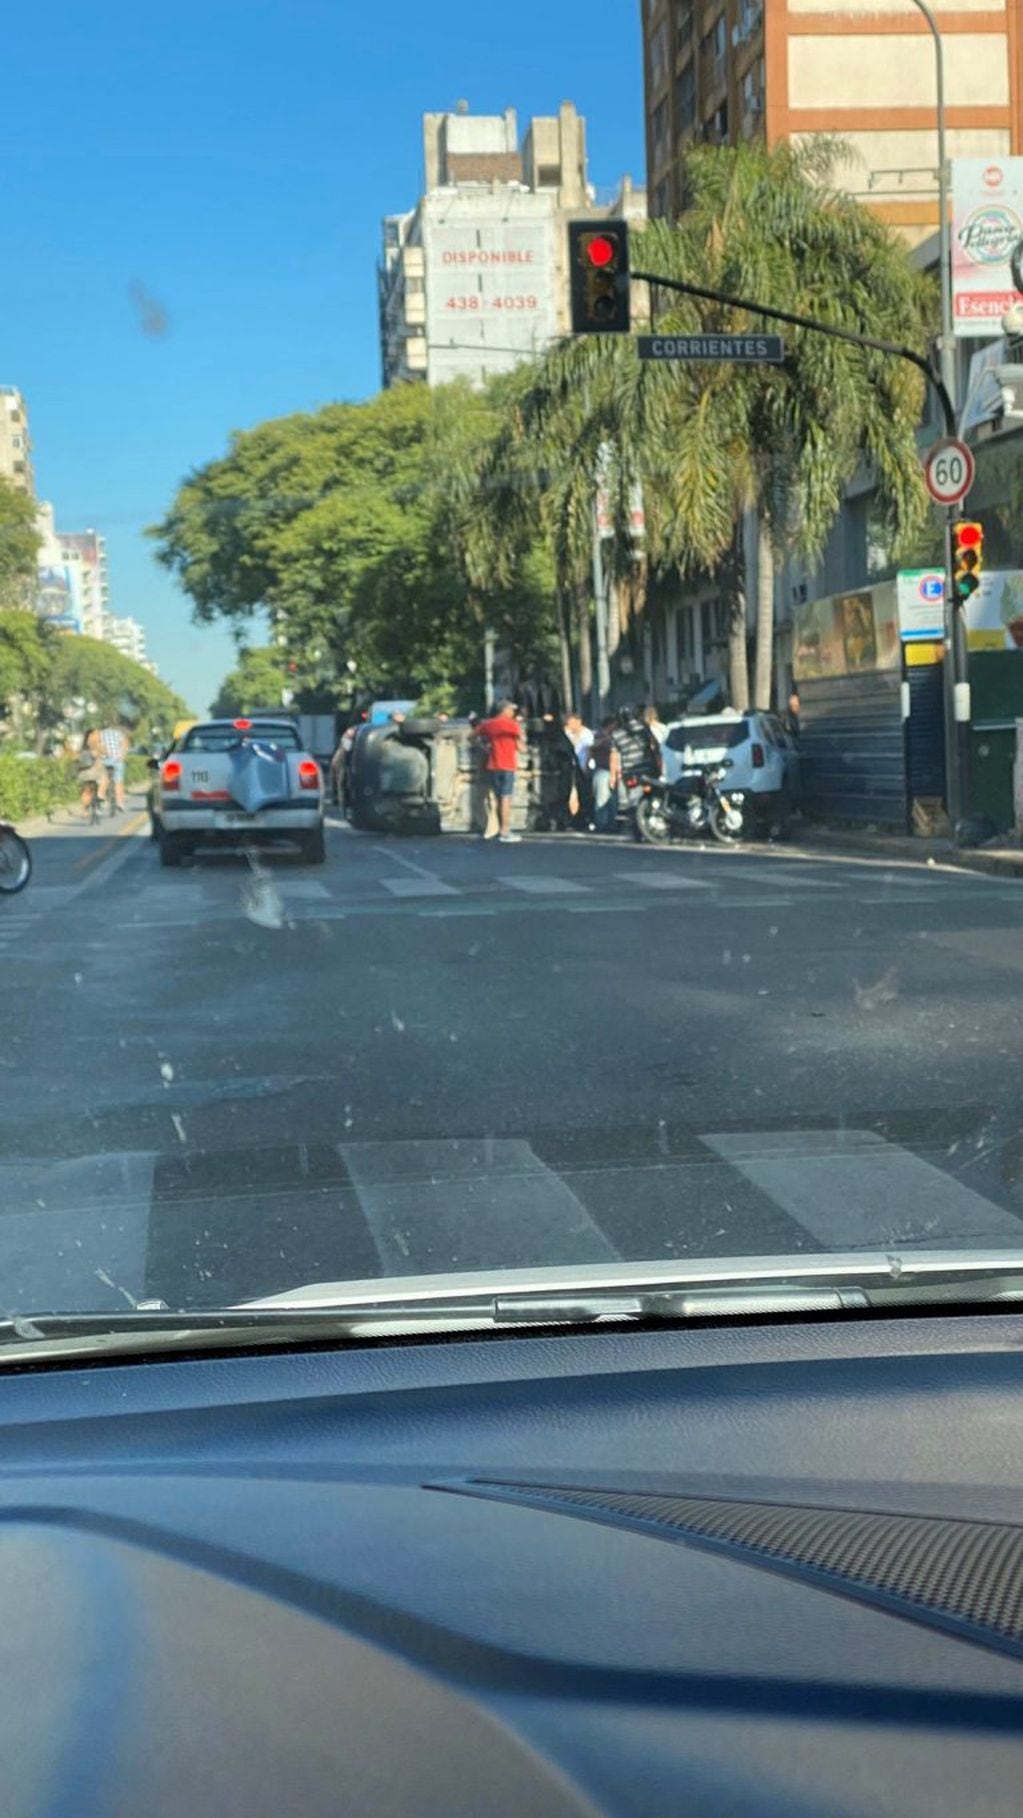 El choque ocurrió en la esquina de Pellegrini y Corrientes. (@maxialbera)